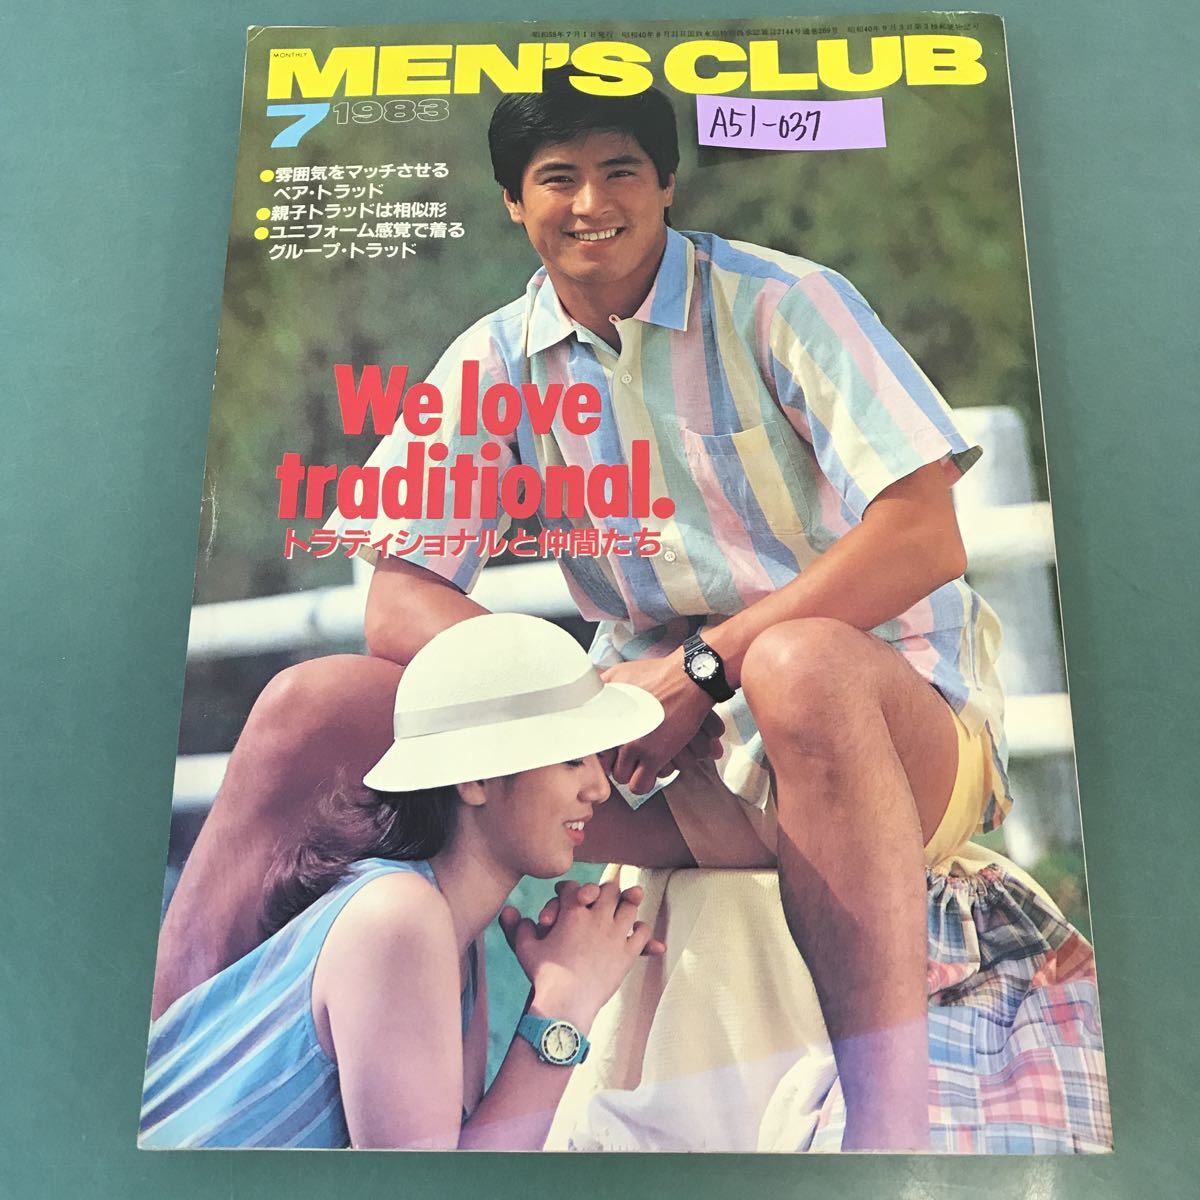 A51-037 MEN'S CLUB 1983年 7月号 No.269 特集 トラディショナルと仲間たち 乱丁有り_画像1